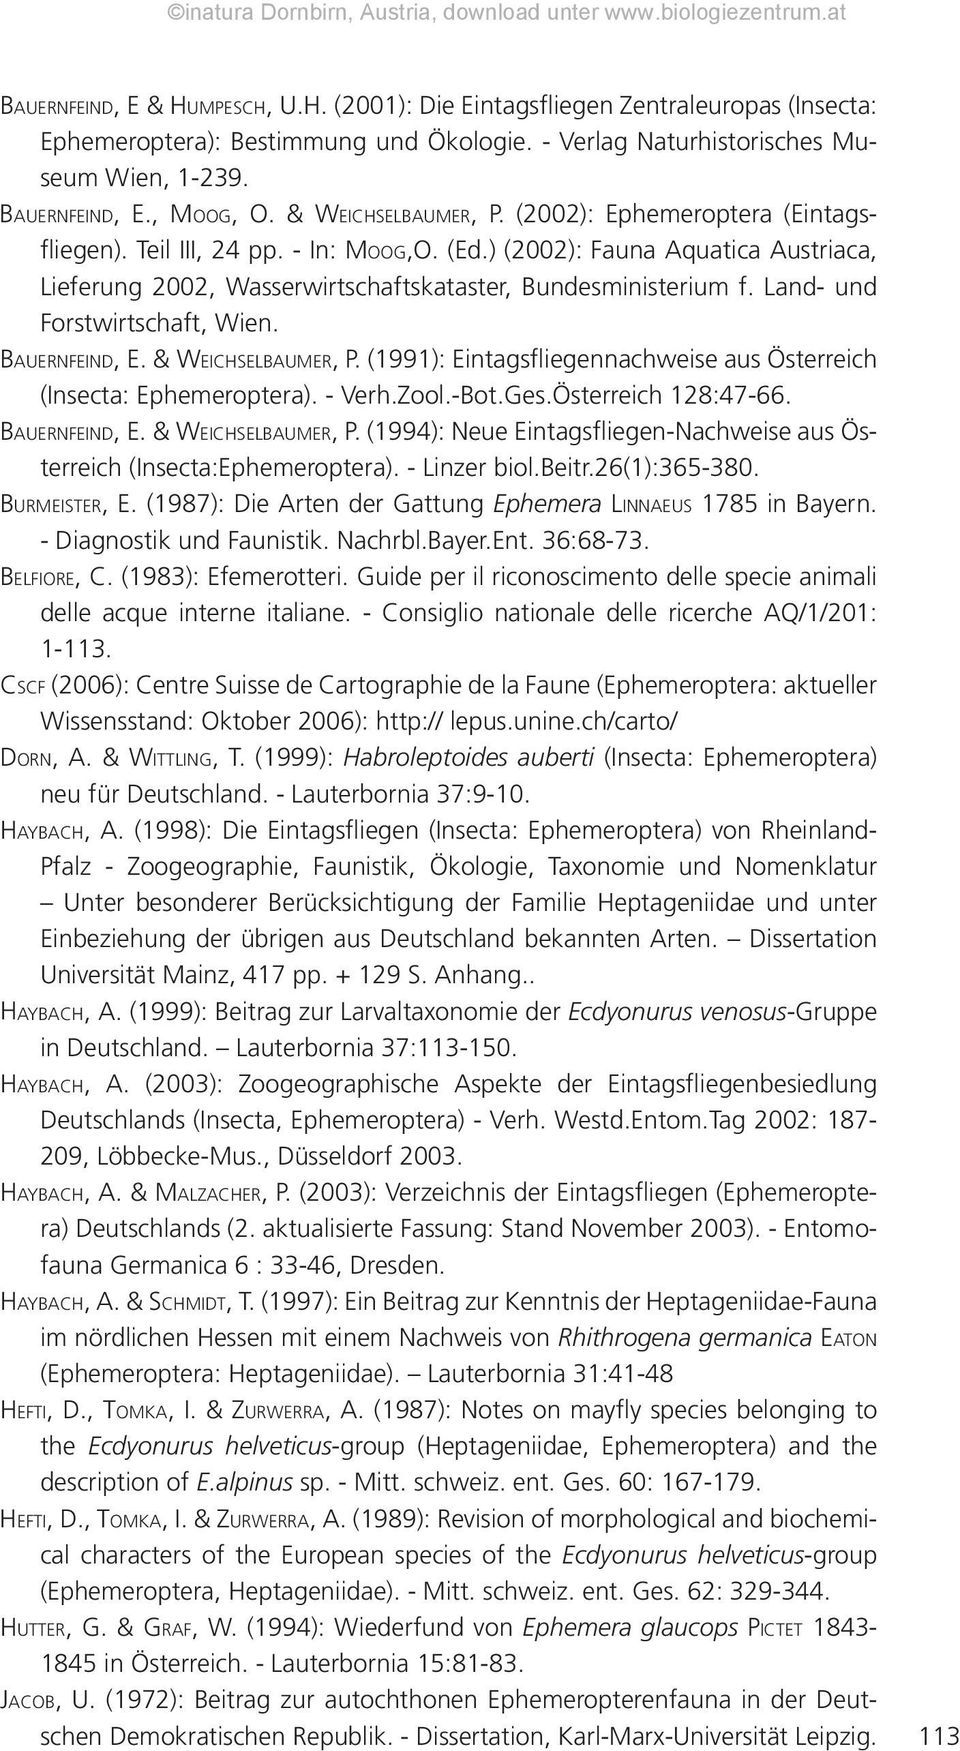 Land- und Forstwirtschaft, Wien. BAUERNFEIND, E. & WEICHSELBAUMER, P. (1991): Eintagsfliegennachweise aus Österreich (Insecta: Ephemeroptera). - Verh.Zool.-Bot.Ges.Österreich 128:47-66.